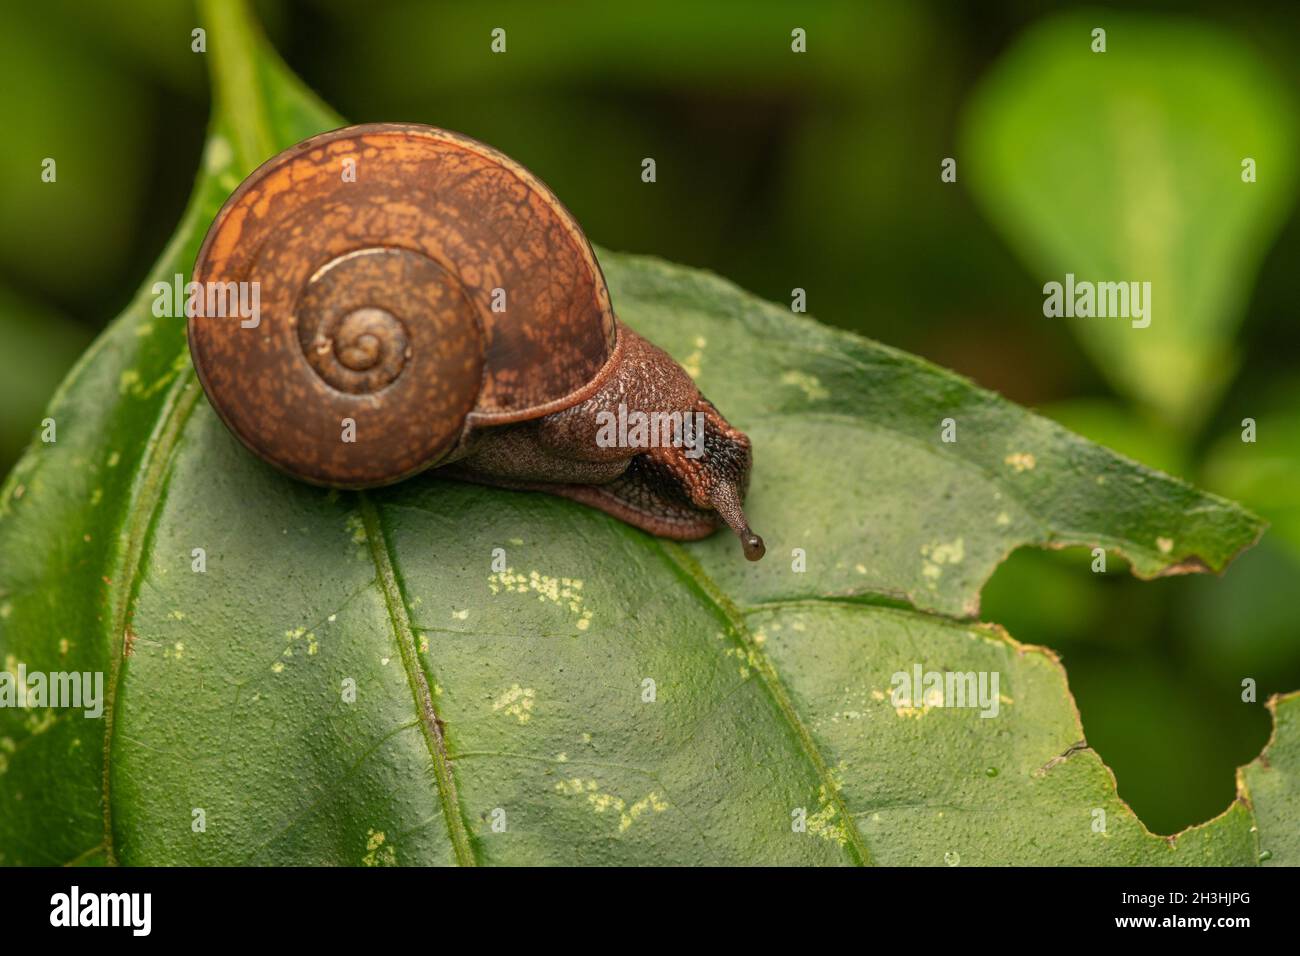 Pleurodonte guadeloupensis est une espèce d'escargot de terre tropical respirant l'air sur une plante verte Banque D'Images